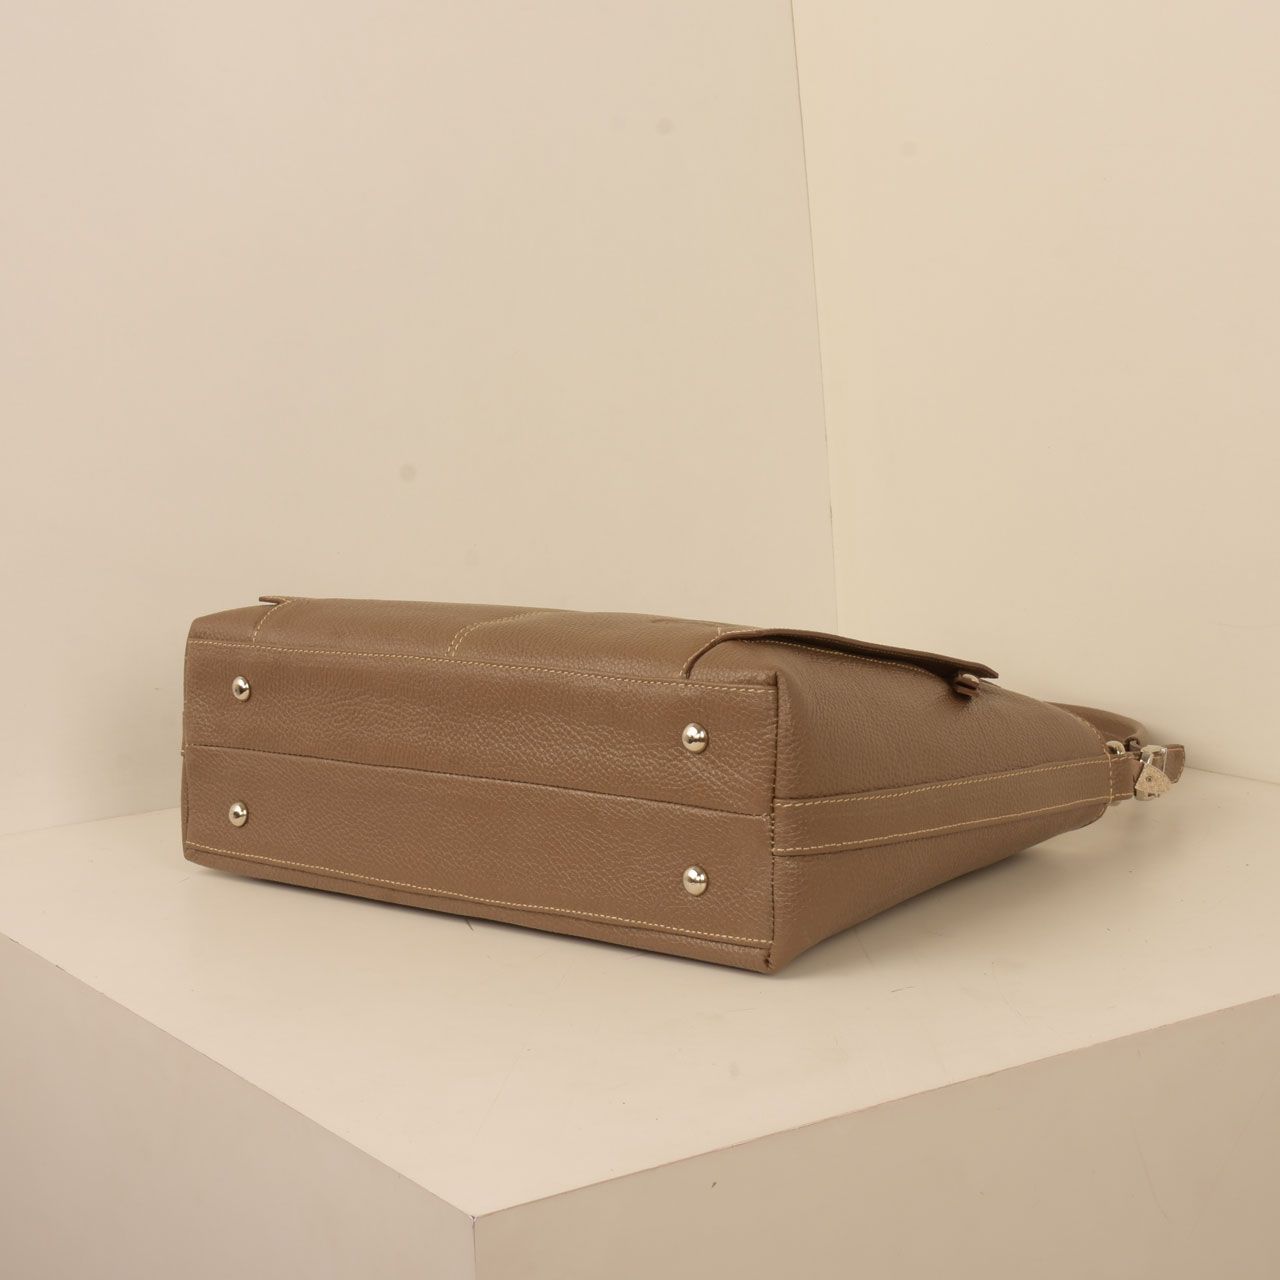  کیف دوشی زنانه پارینه چرم مدل V202-8 -  - 3